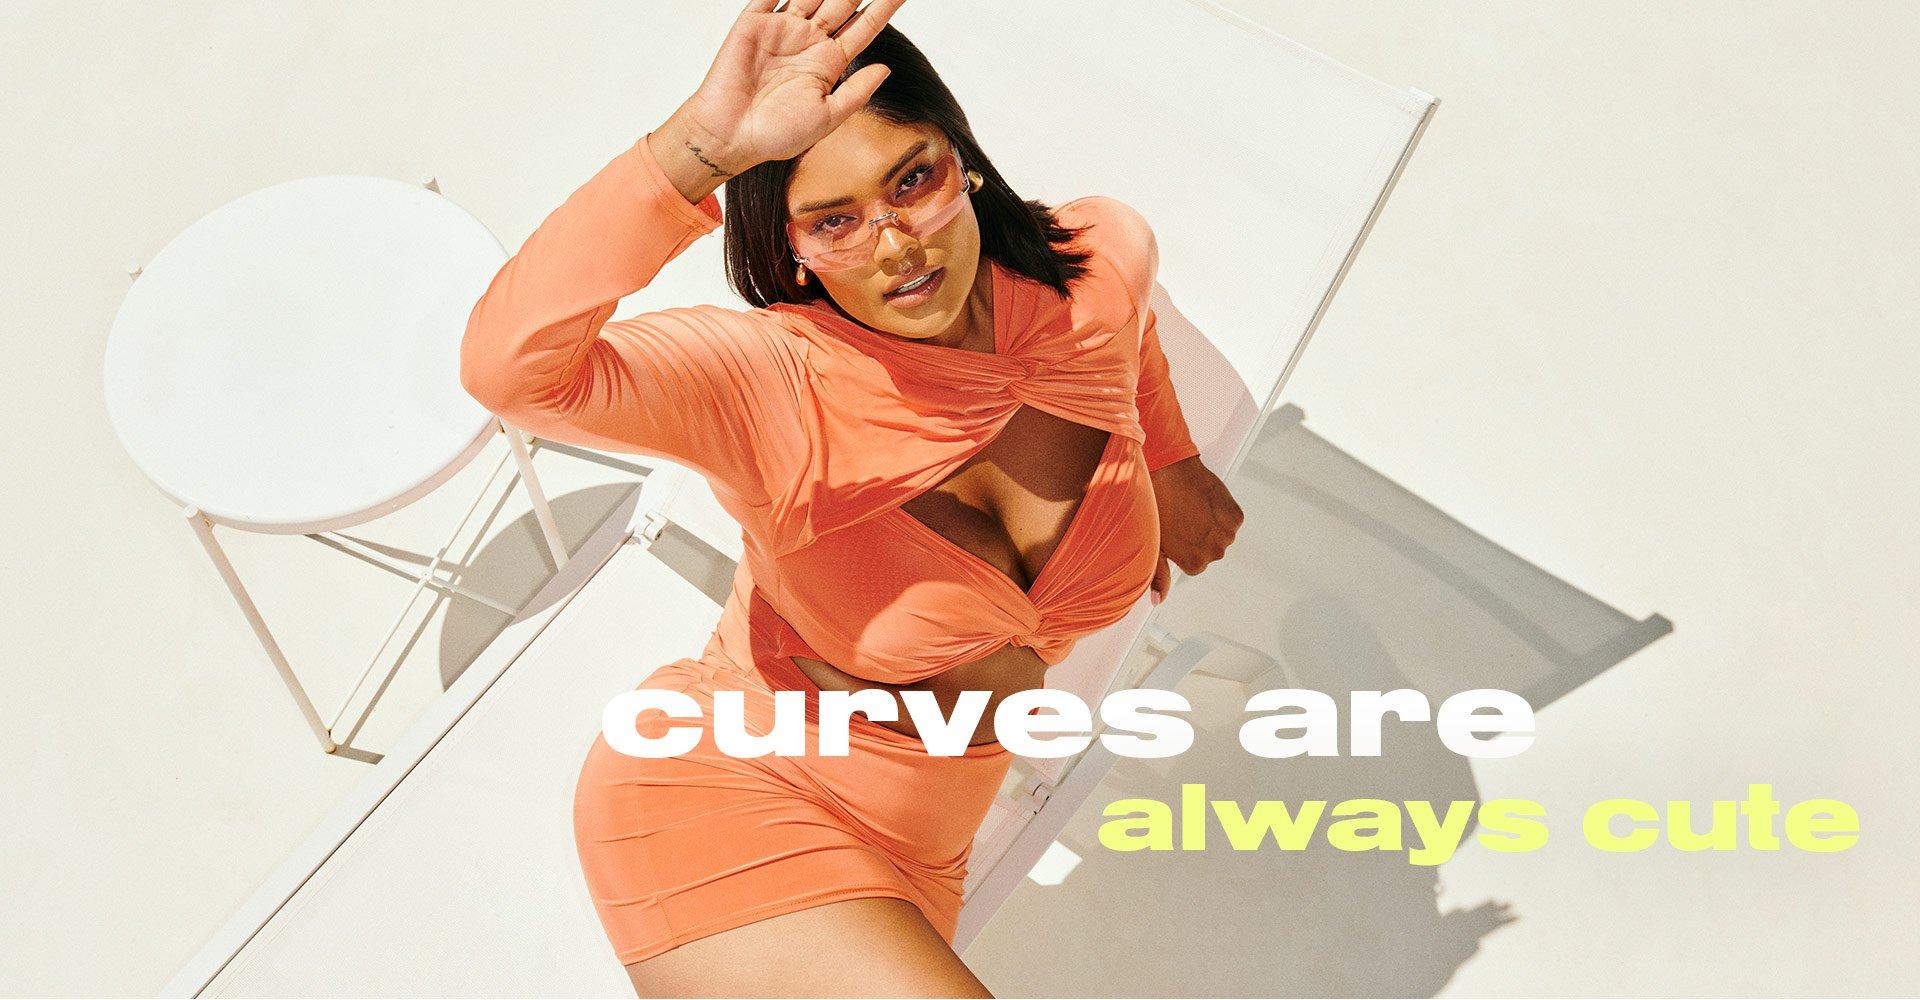 plus-size-curve-clothing